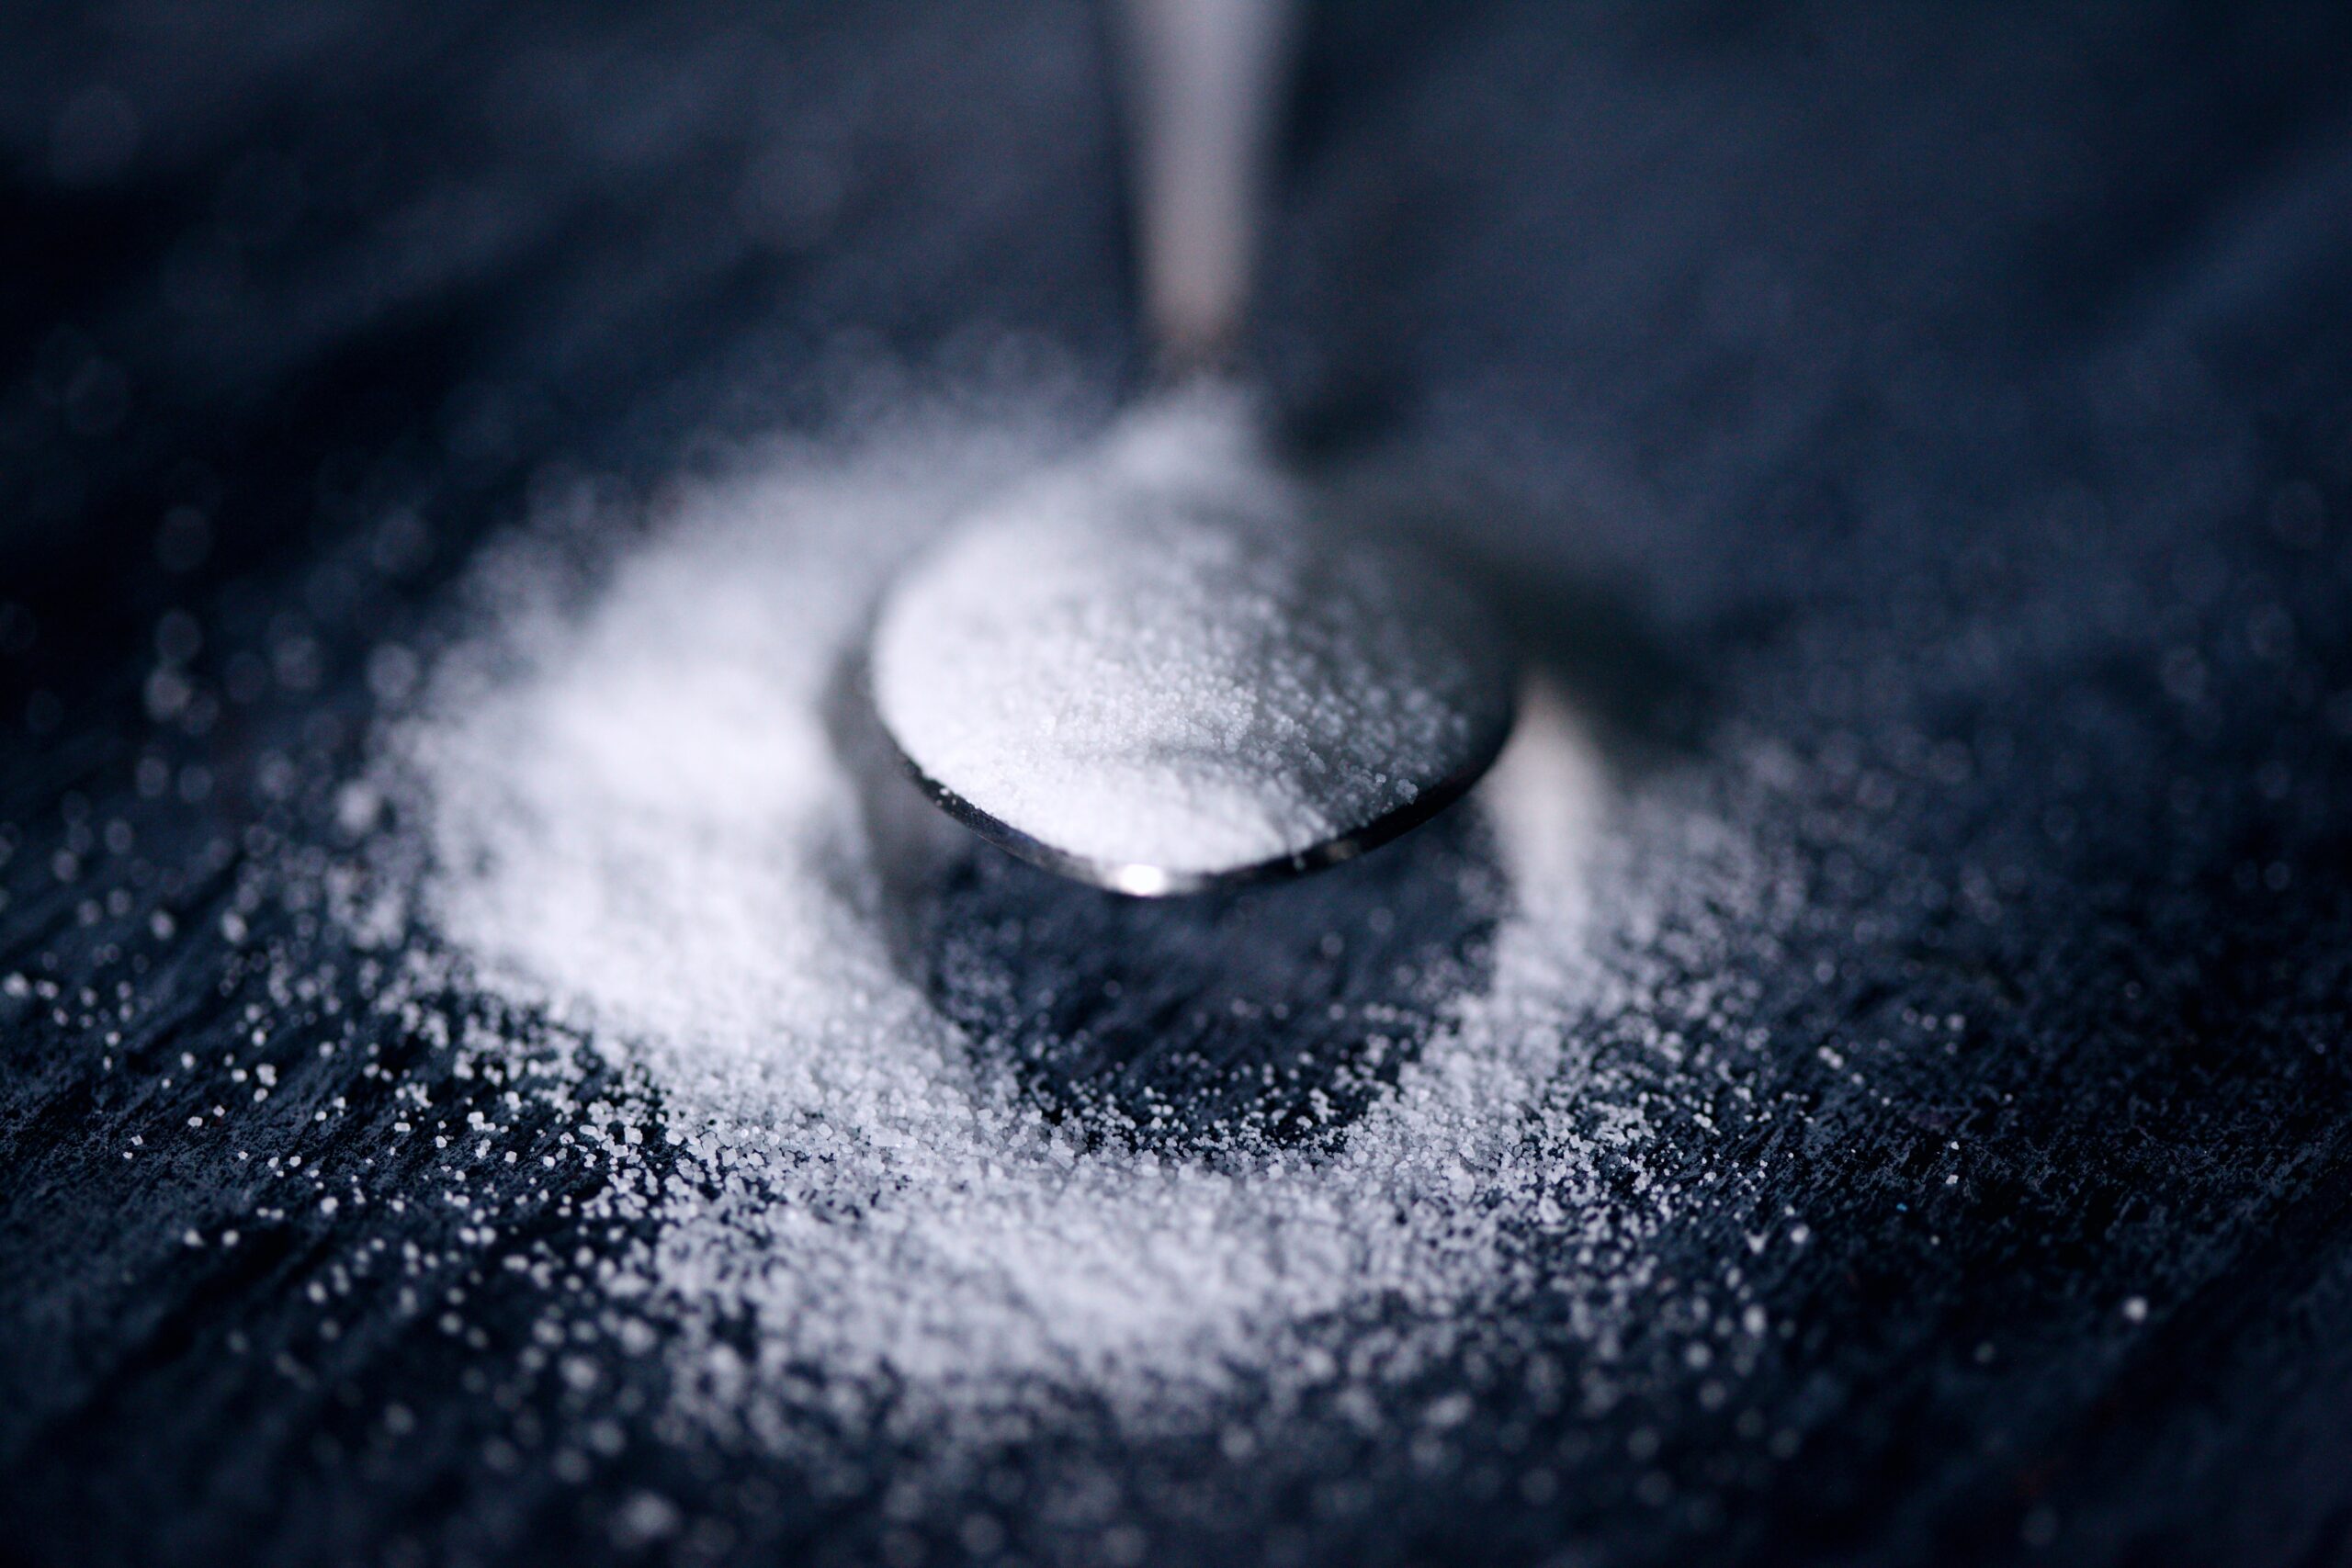 sugar intake damages health